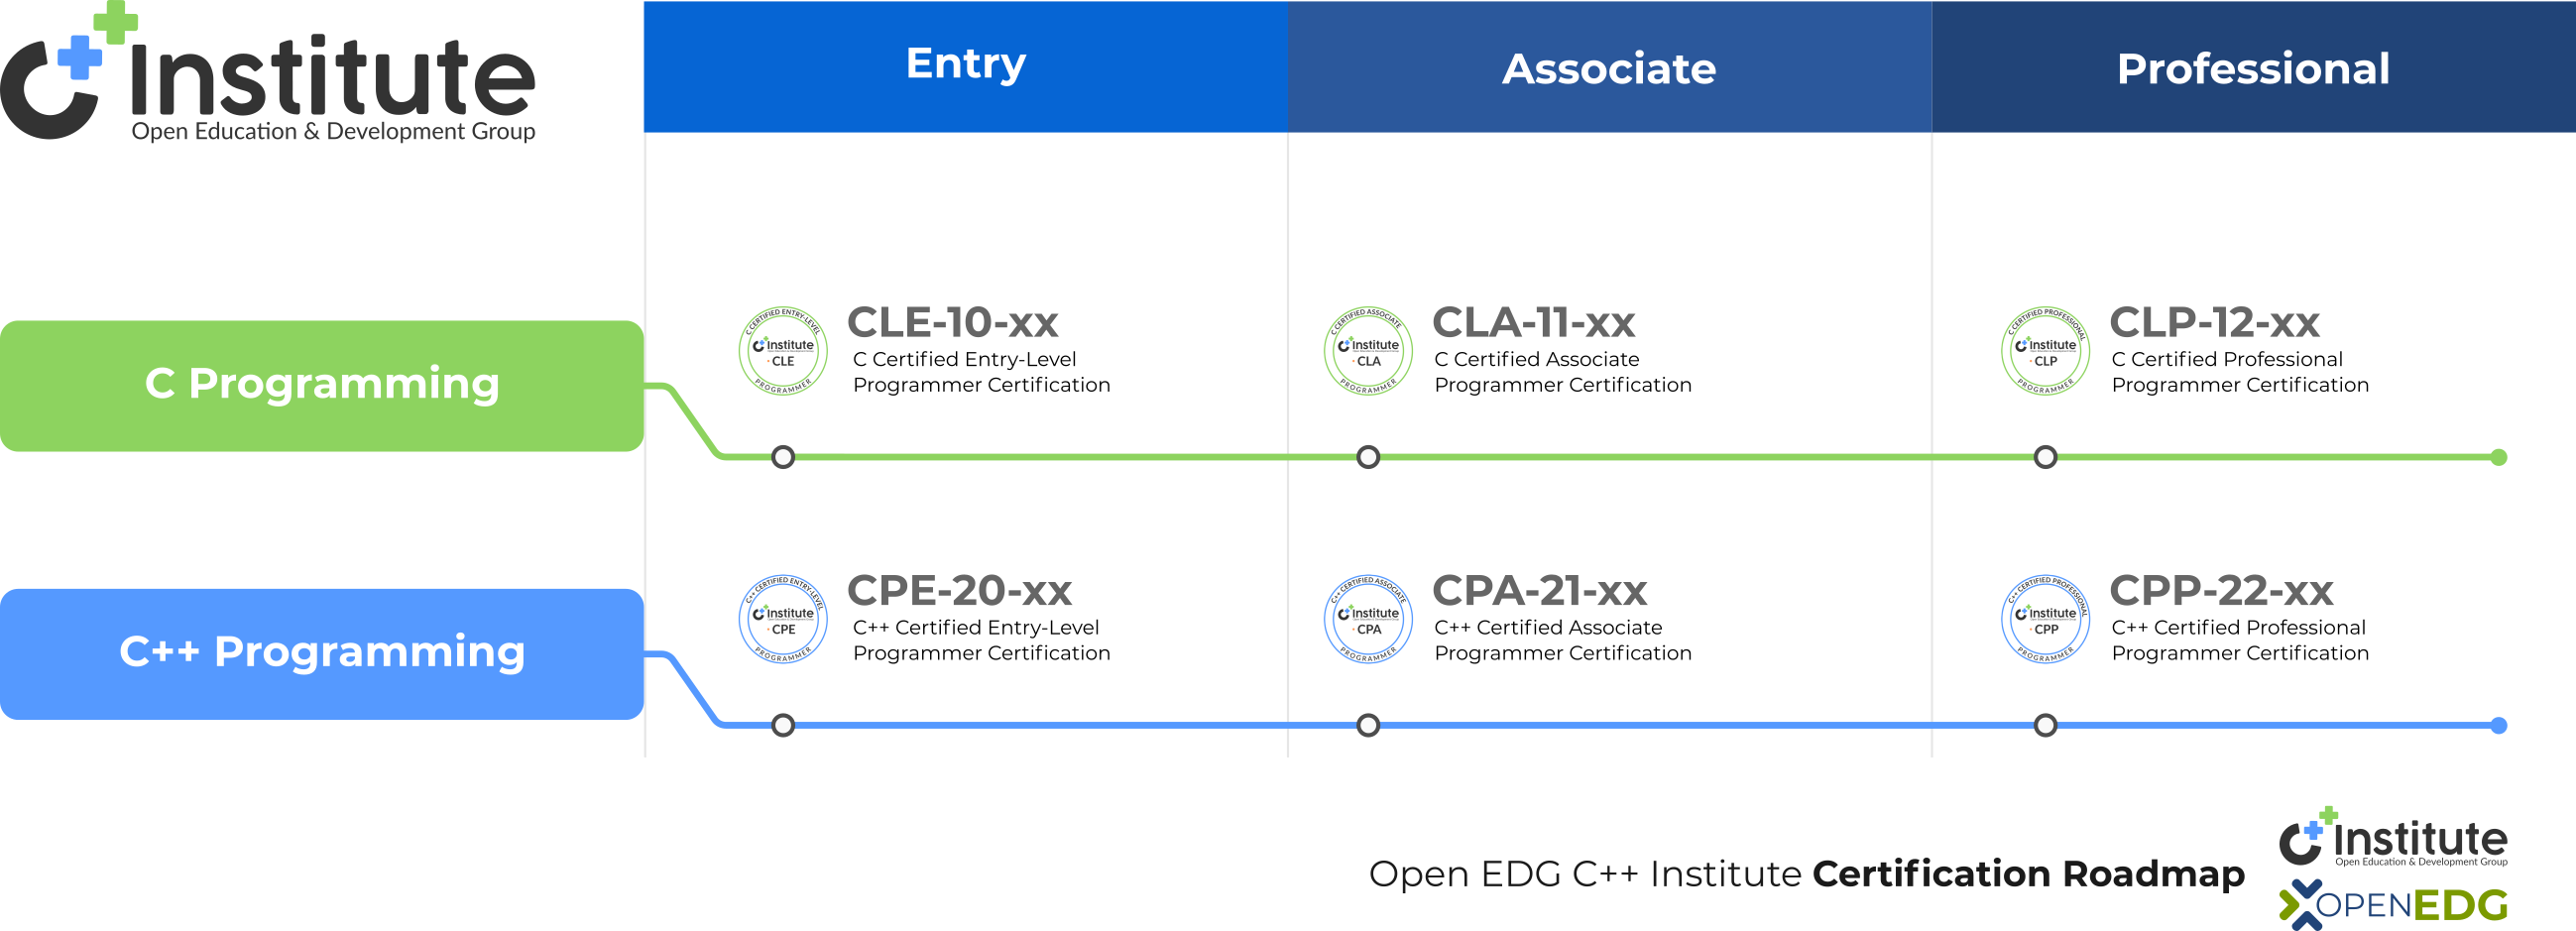 C++ Institute certification roadmap